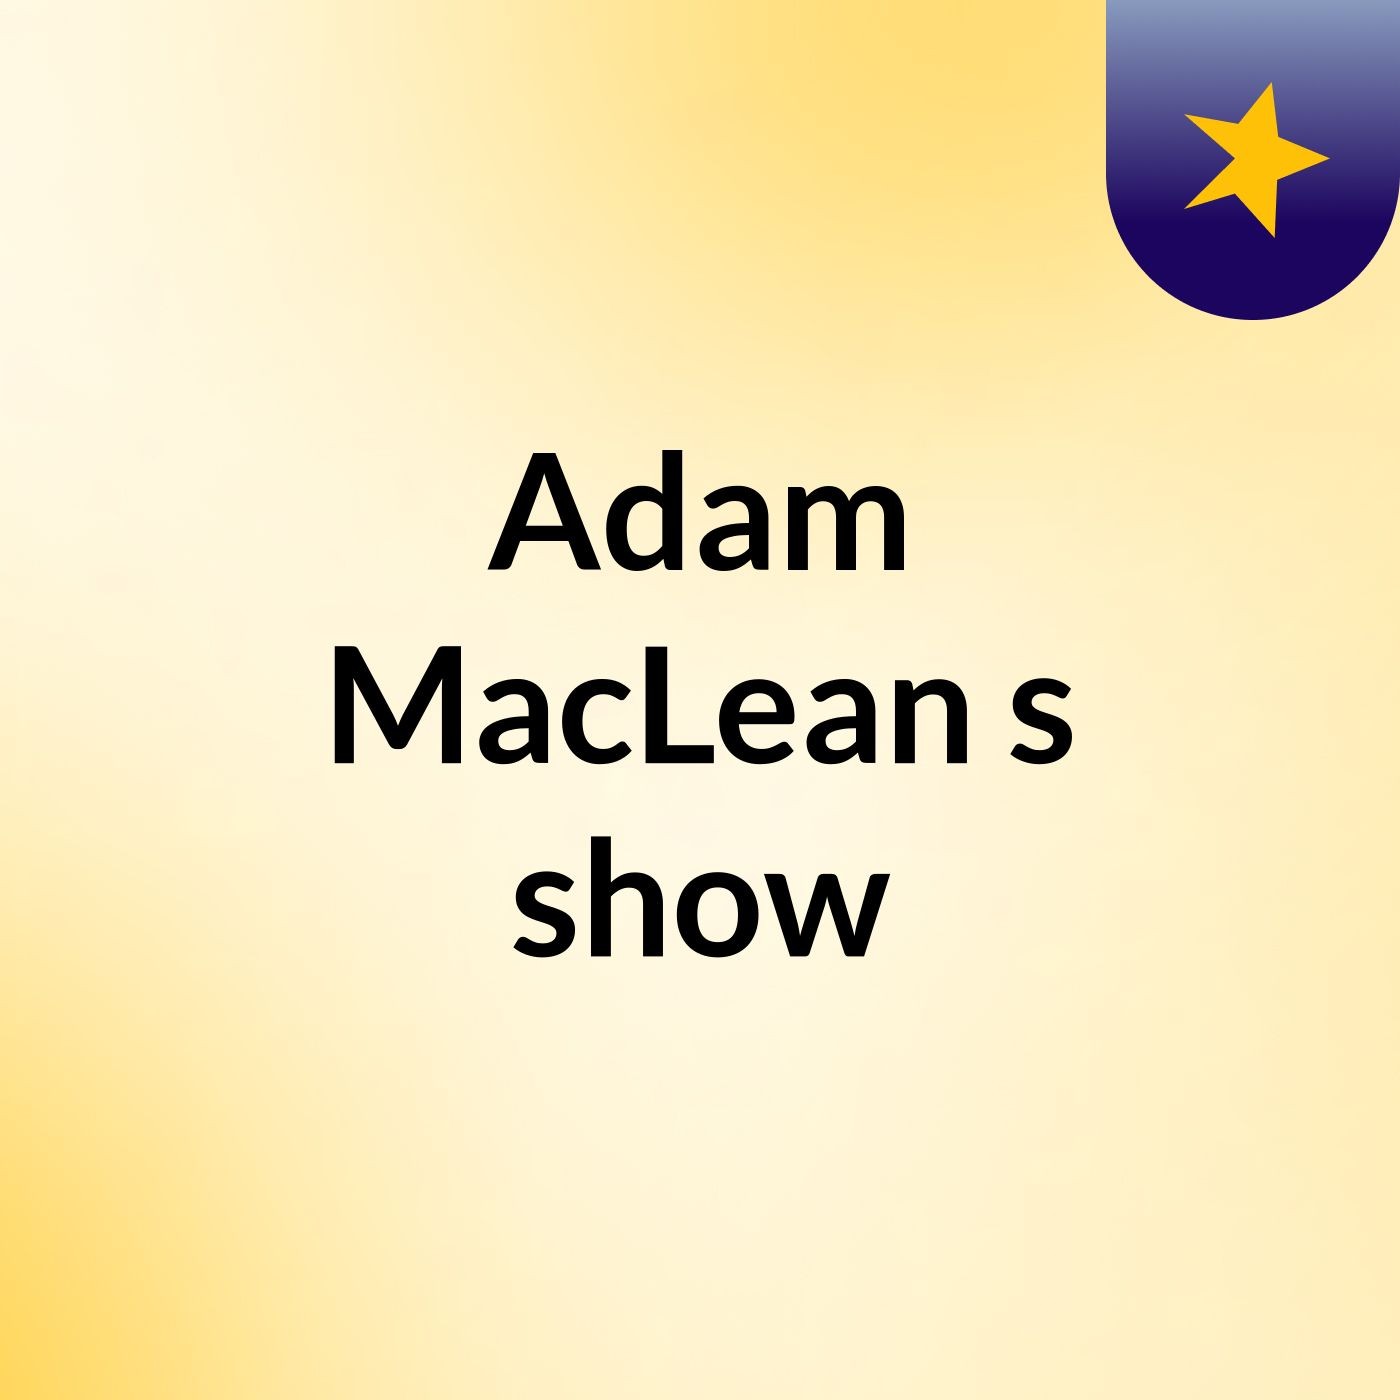 Adam MacLean's show